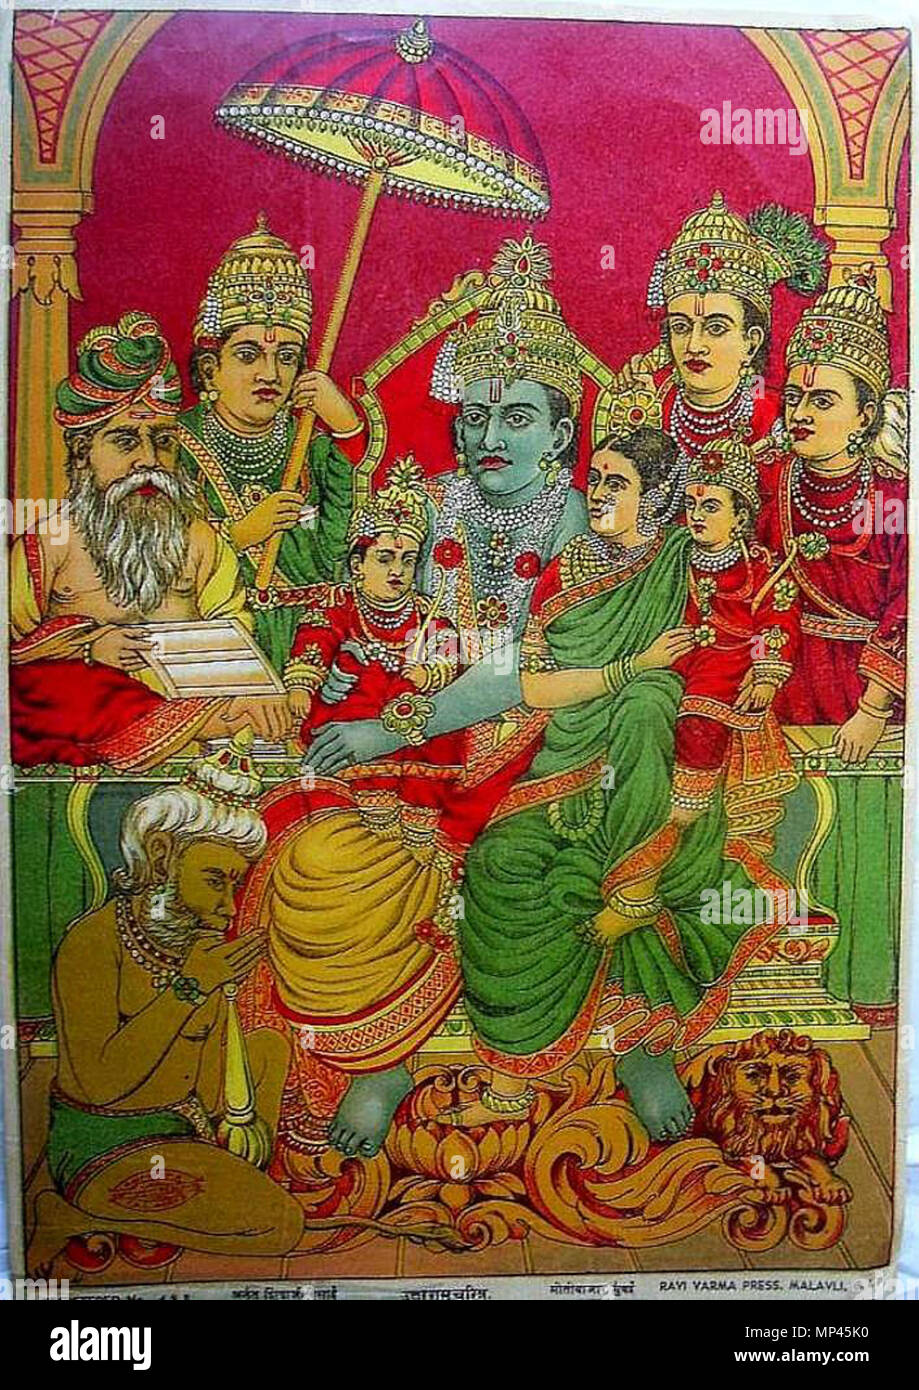 1041 Rama e Sita, Hanuman e Rama i tre fratelli Lakshmana, Bharata e Shatrughna Foto Stock